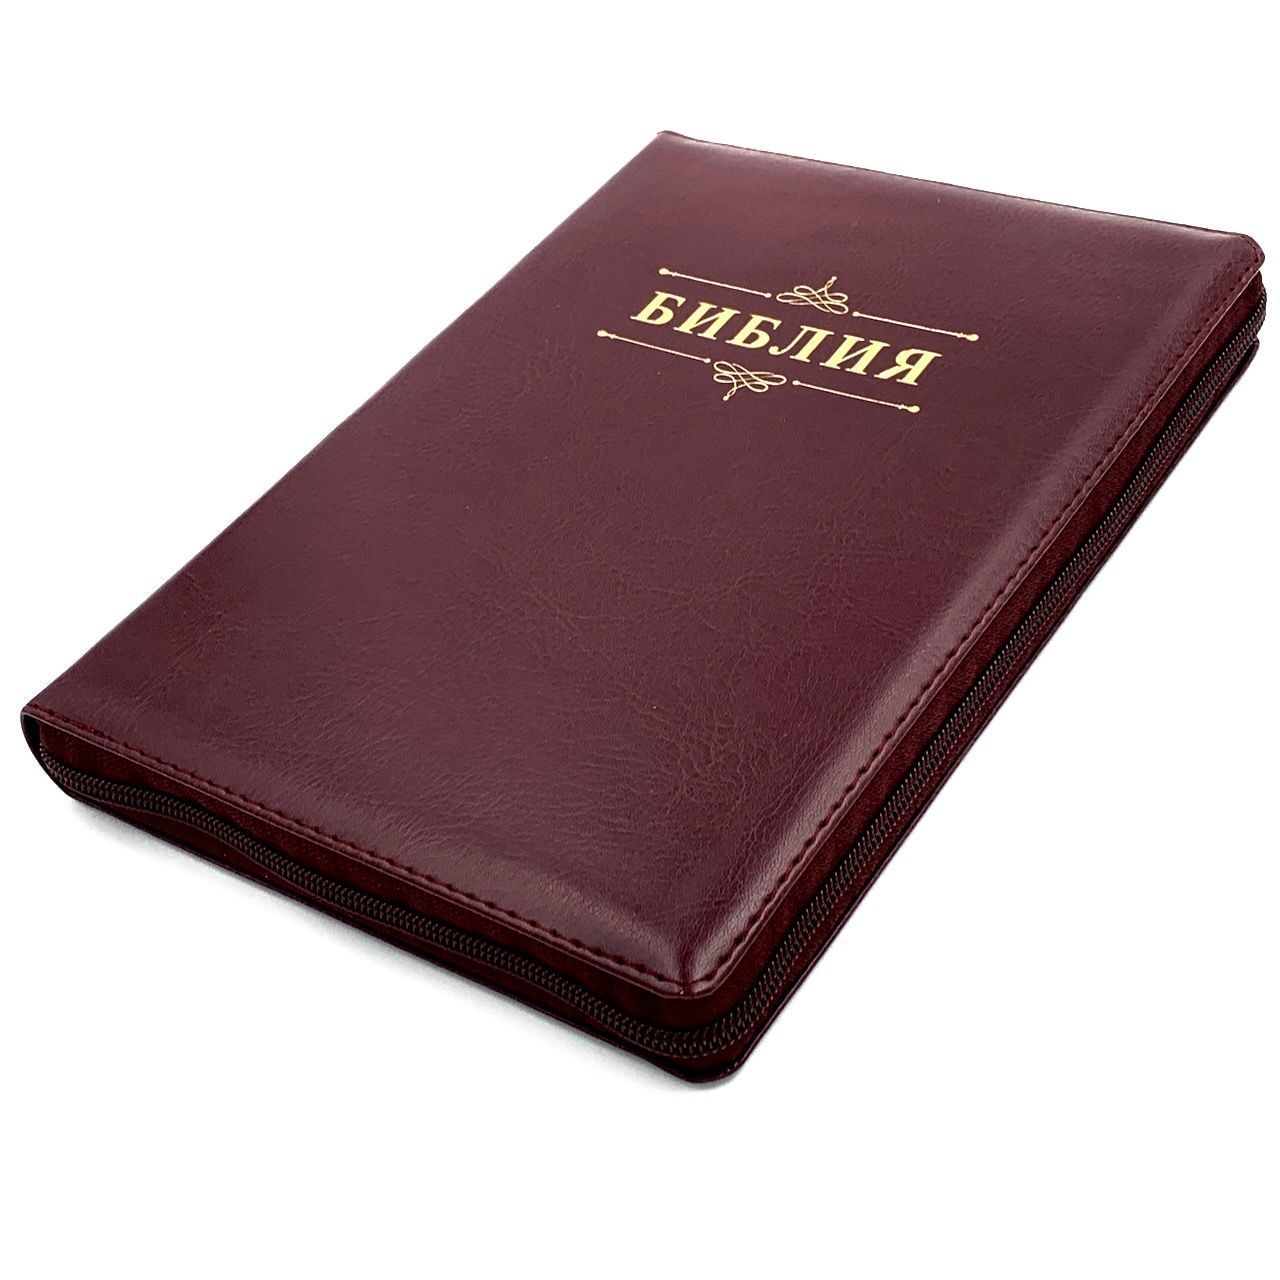 Библия 076zti код 23076-33,  дизайн "Библия с вензелем", переплет из искусственной кожи на молнии с индексами, цвет темно-бордовый, размер 180x243 мм